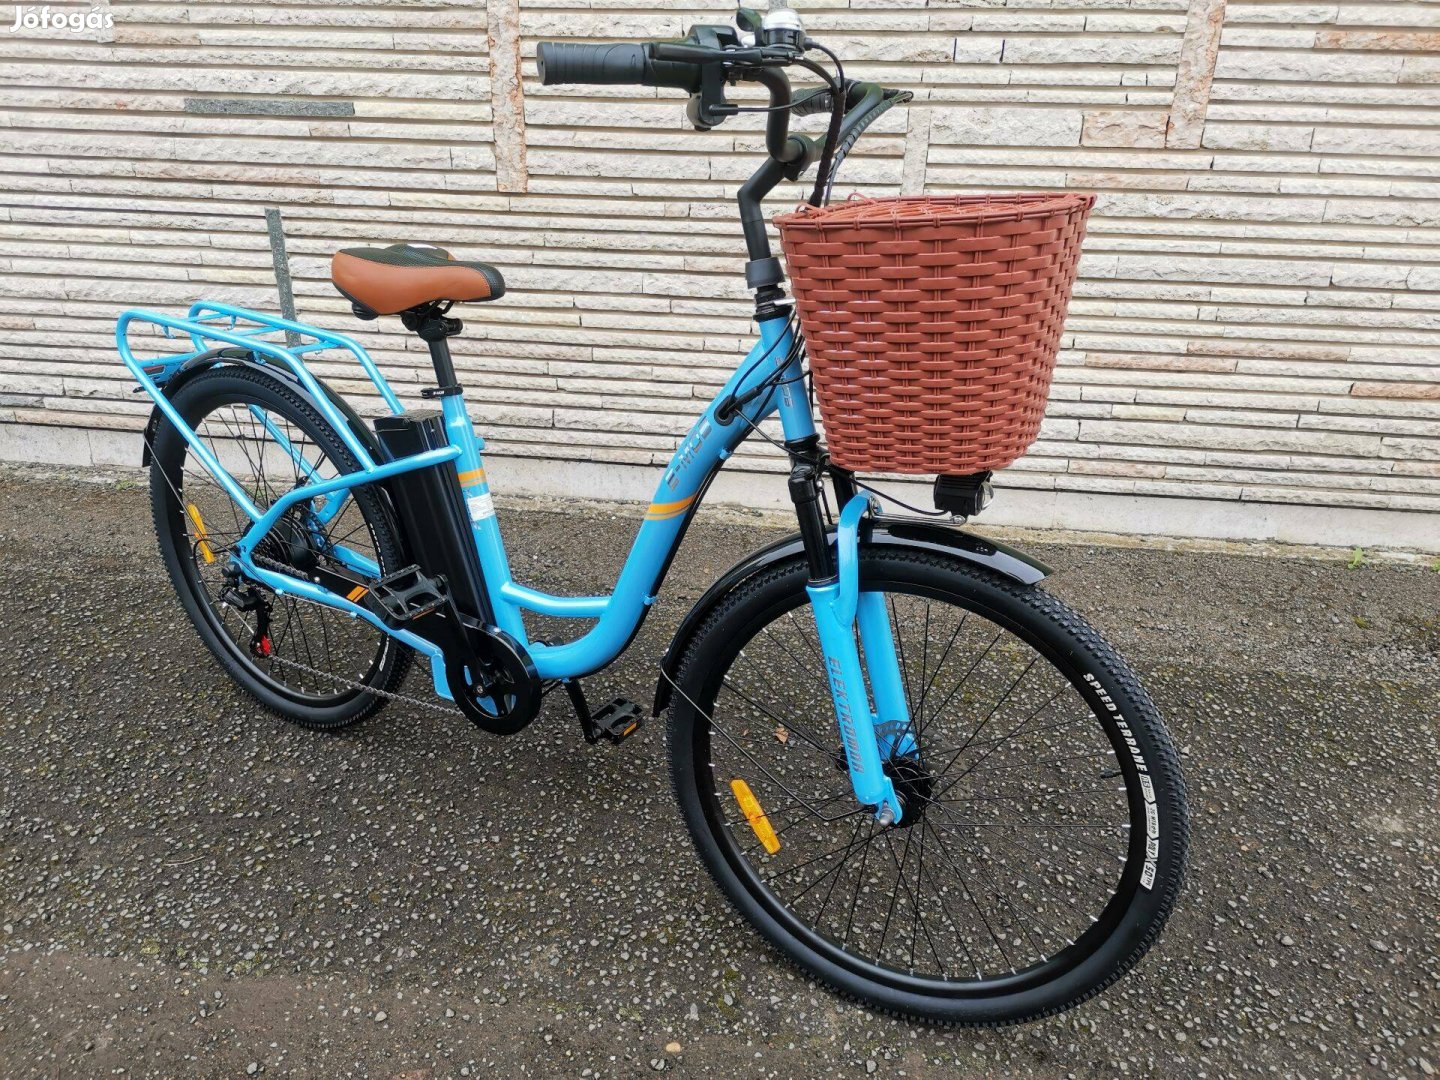 Polymobil E-MOB26 pedalec eleketromos kerékpár Új